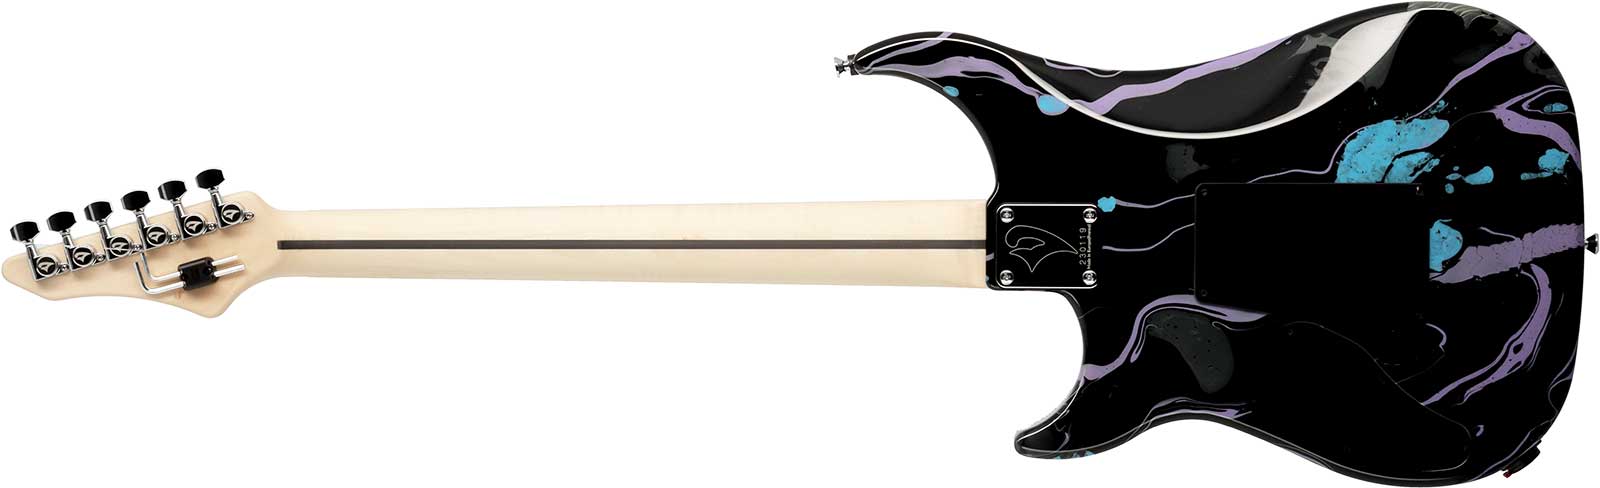 Vigier Ron Thal Bfoot Excalibur Signature Hs Fr Rw - Rock Art Black/purple/blue - Guitare Électrique Signature - Variation 1